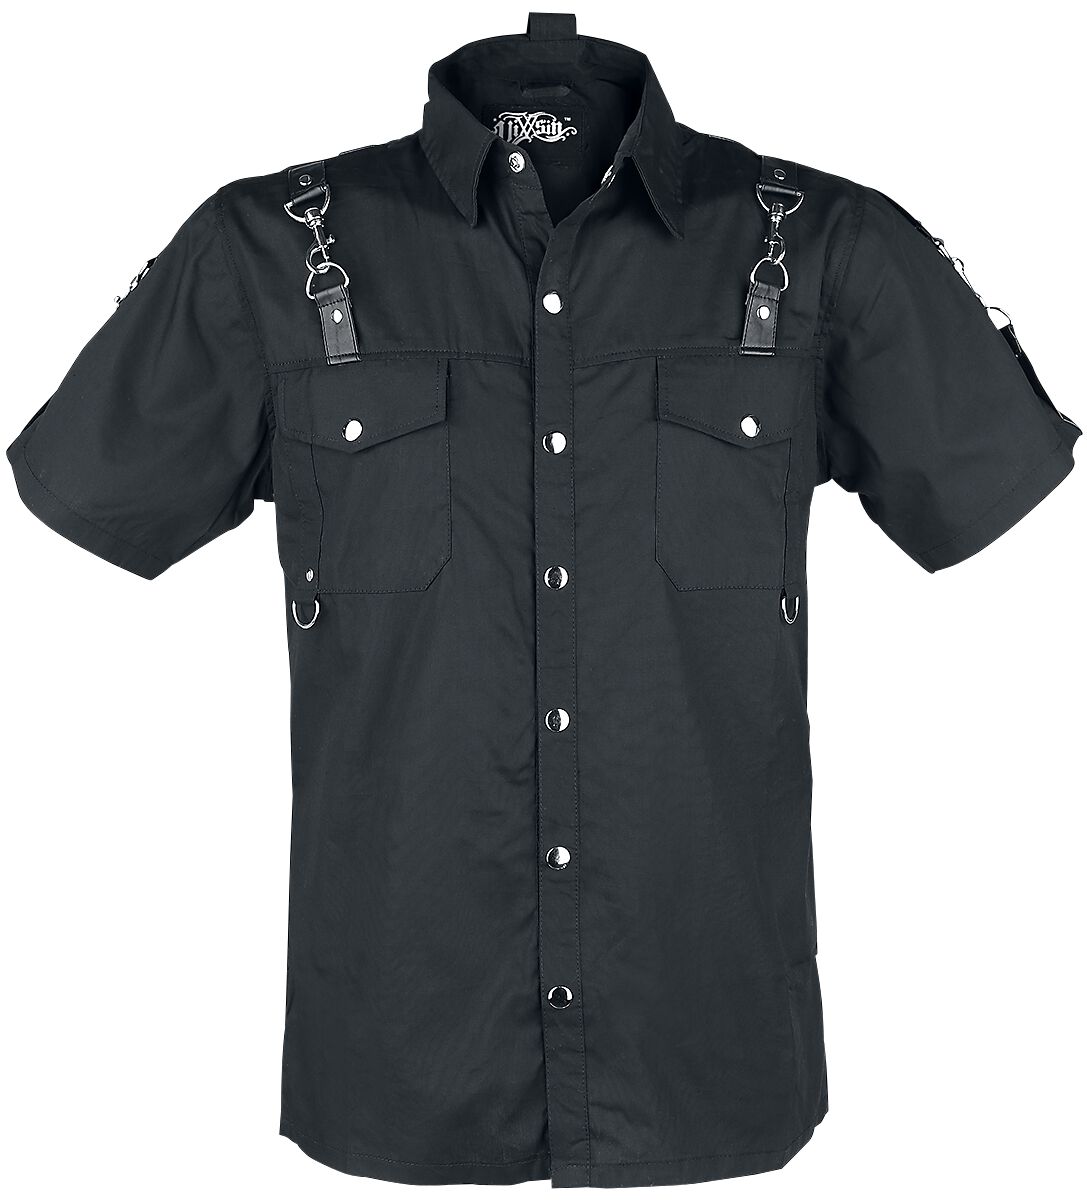 Vixxsin - Gothic Kurzarmhemd - RE Shirt - S bis XXL - für Männer - Größe XL - schwarz